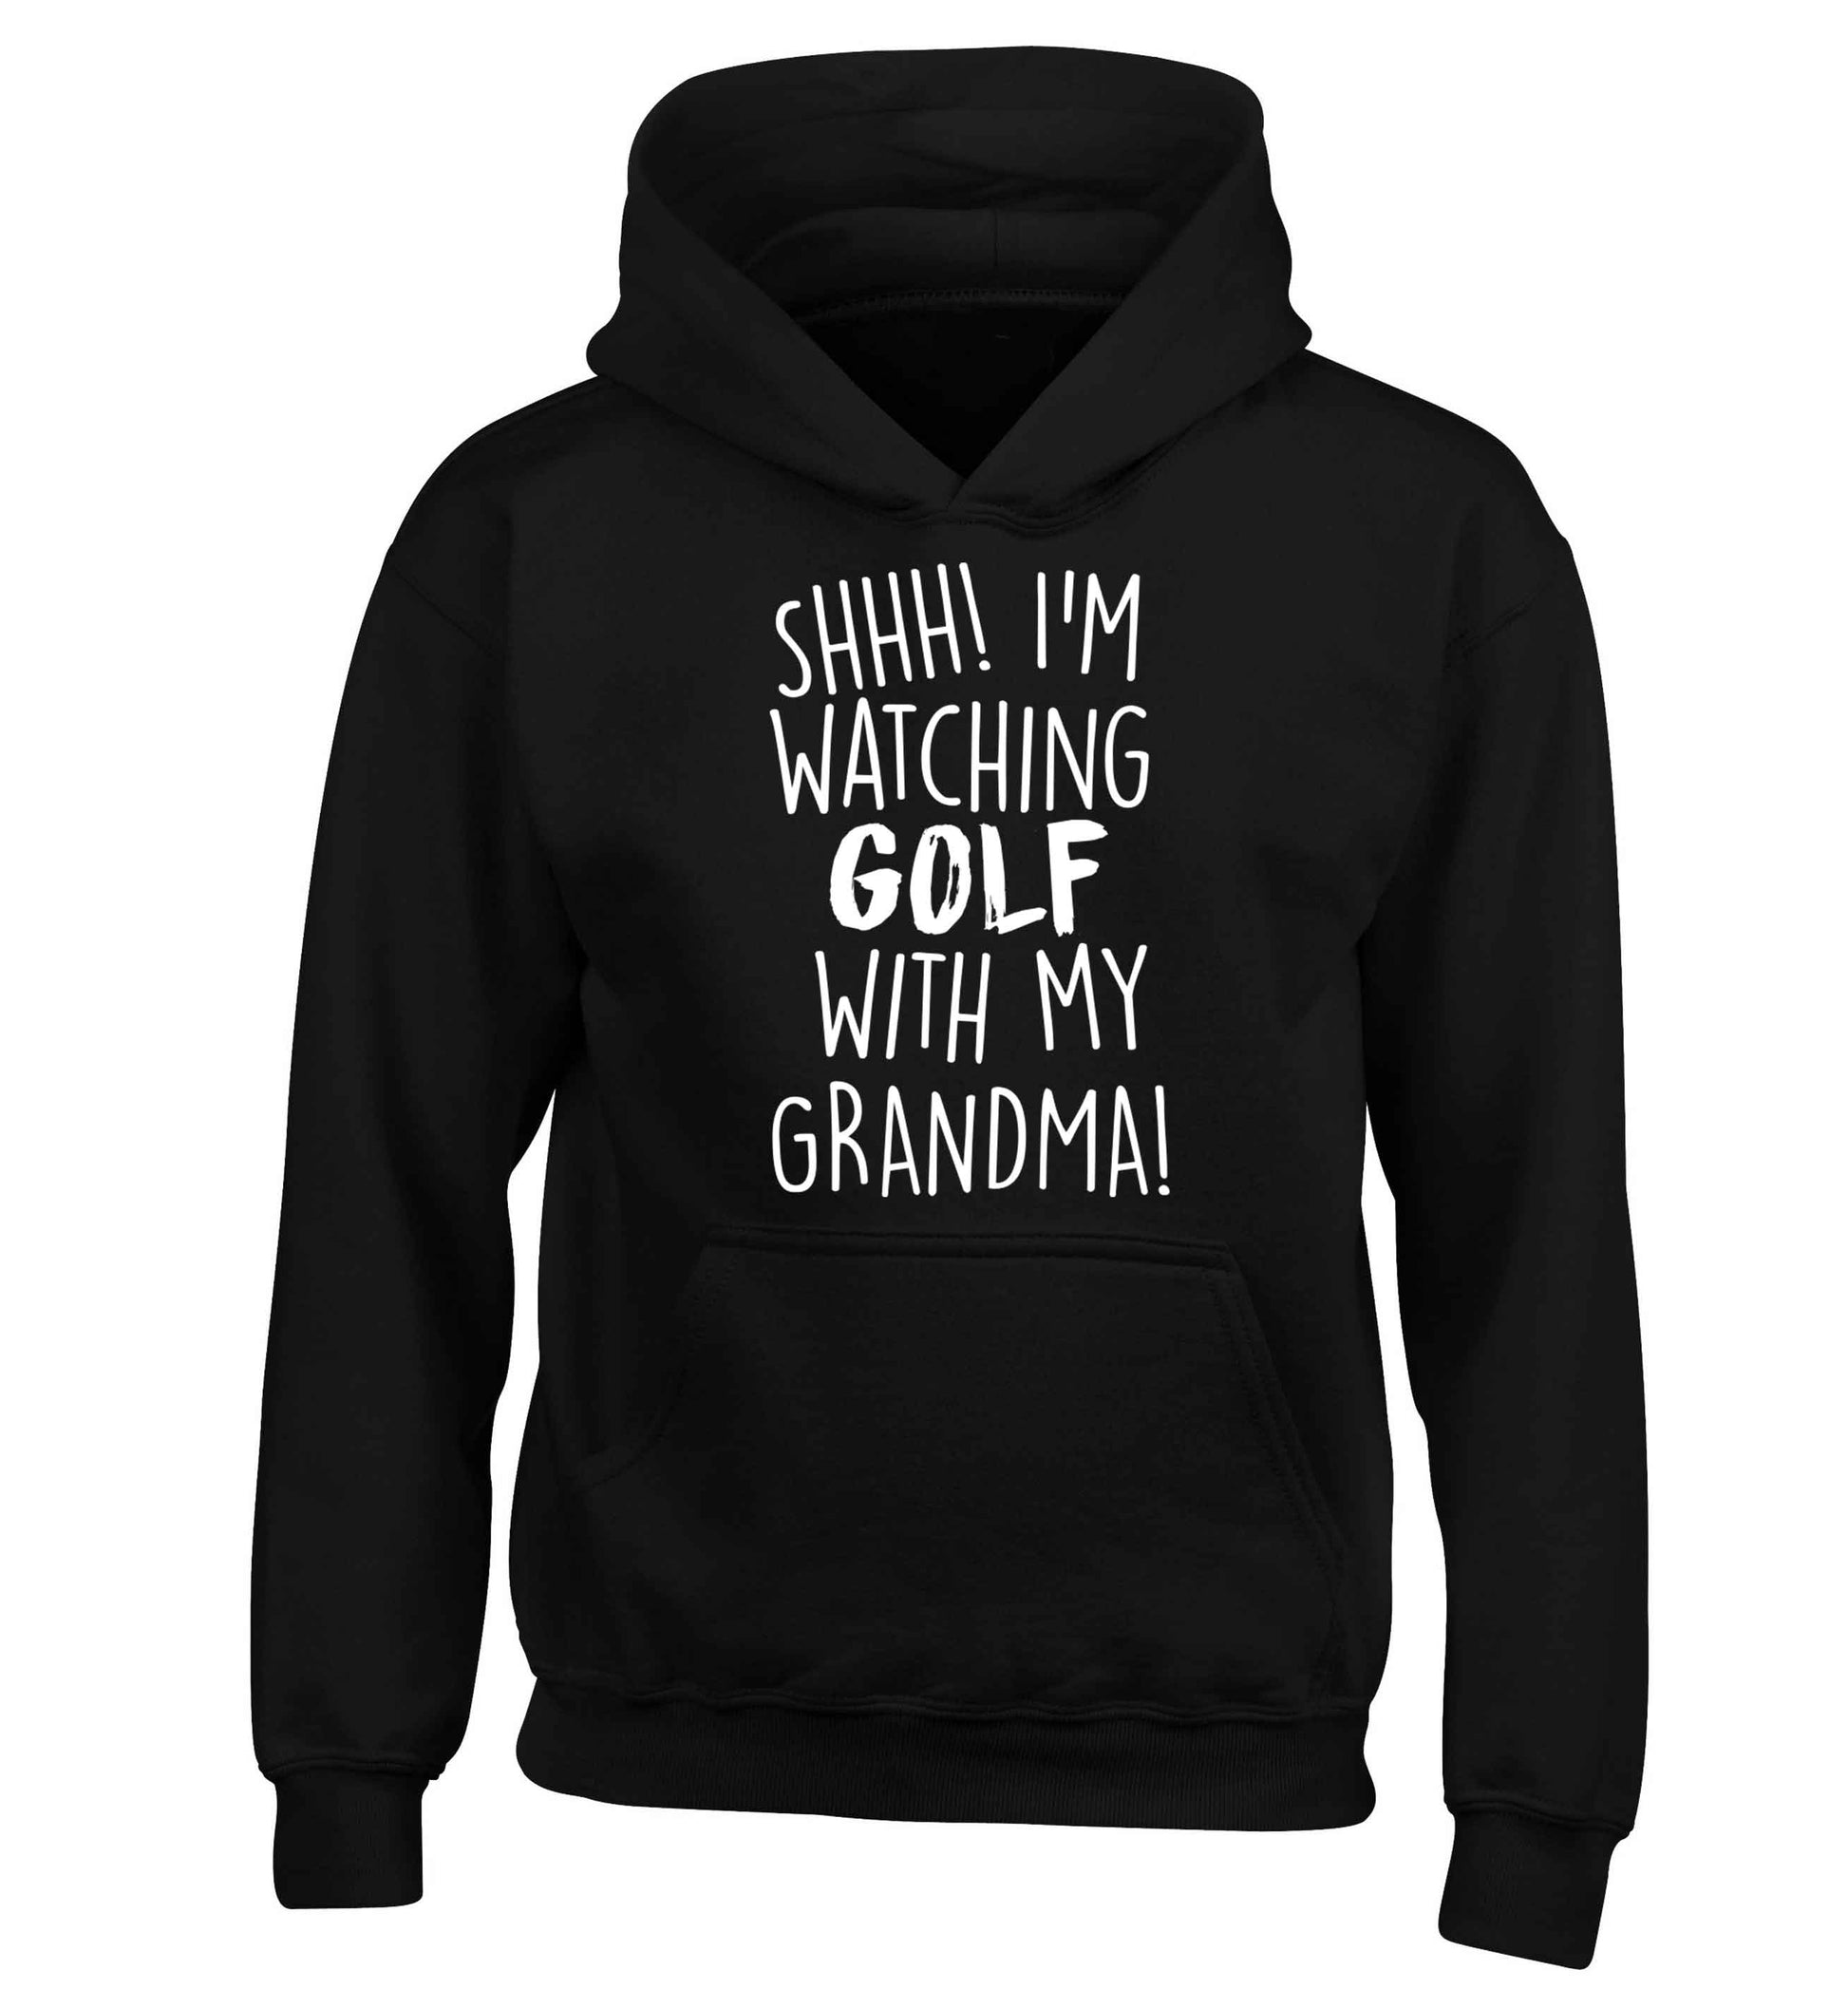 Shh I'm watching golf with my grandma children's black hoodie 12-13 Years